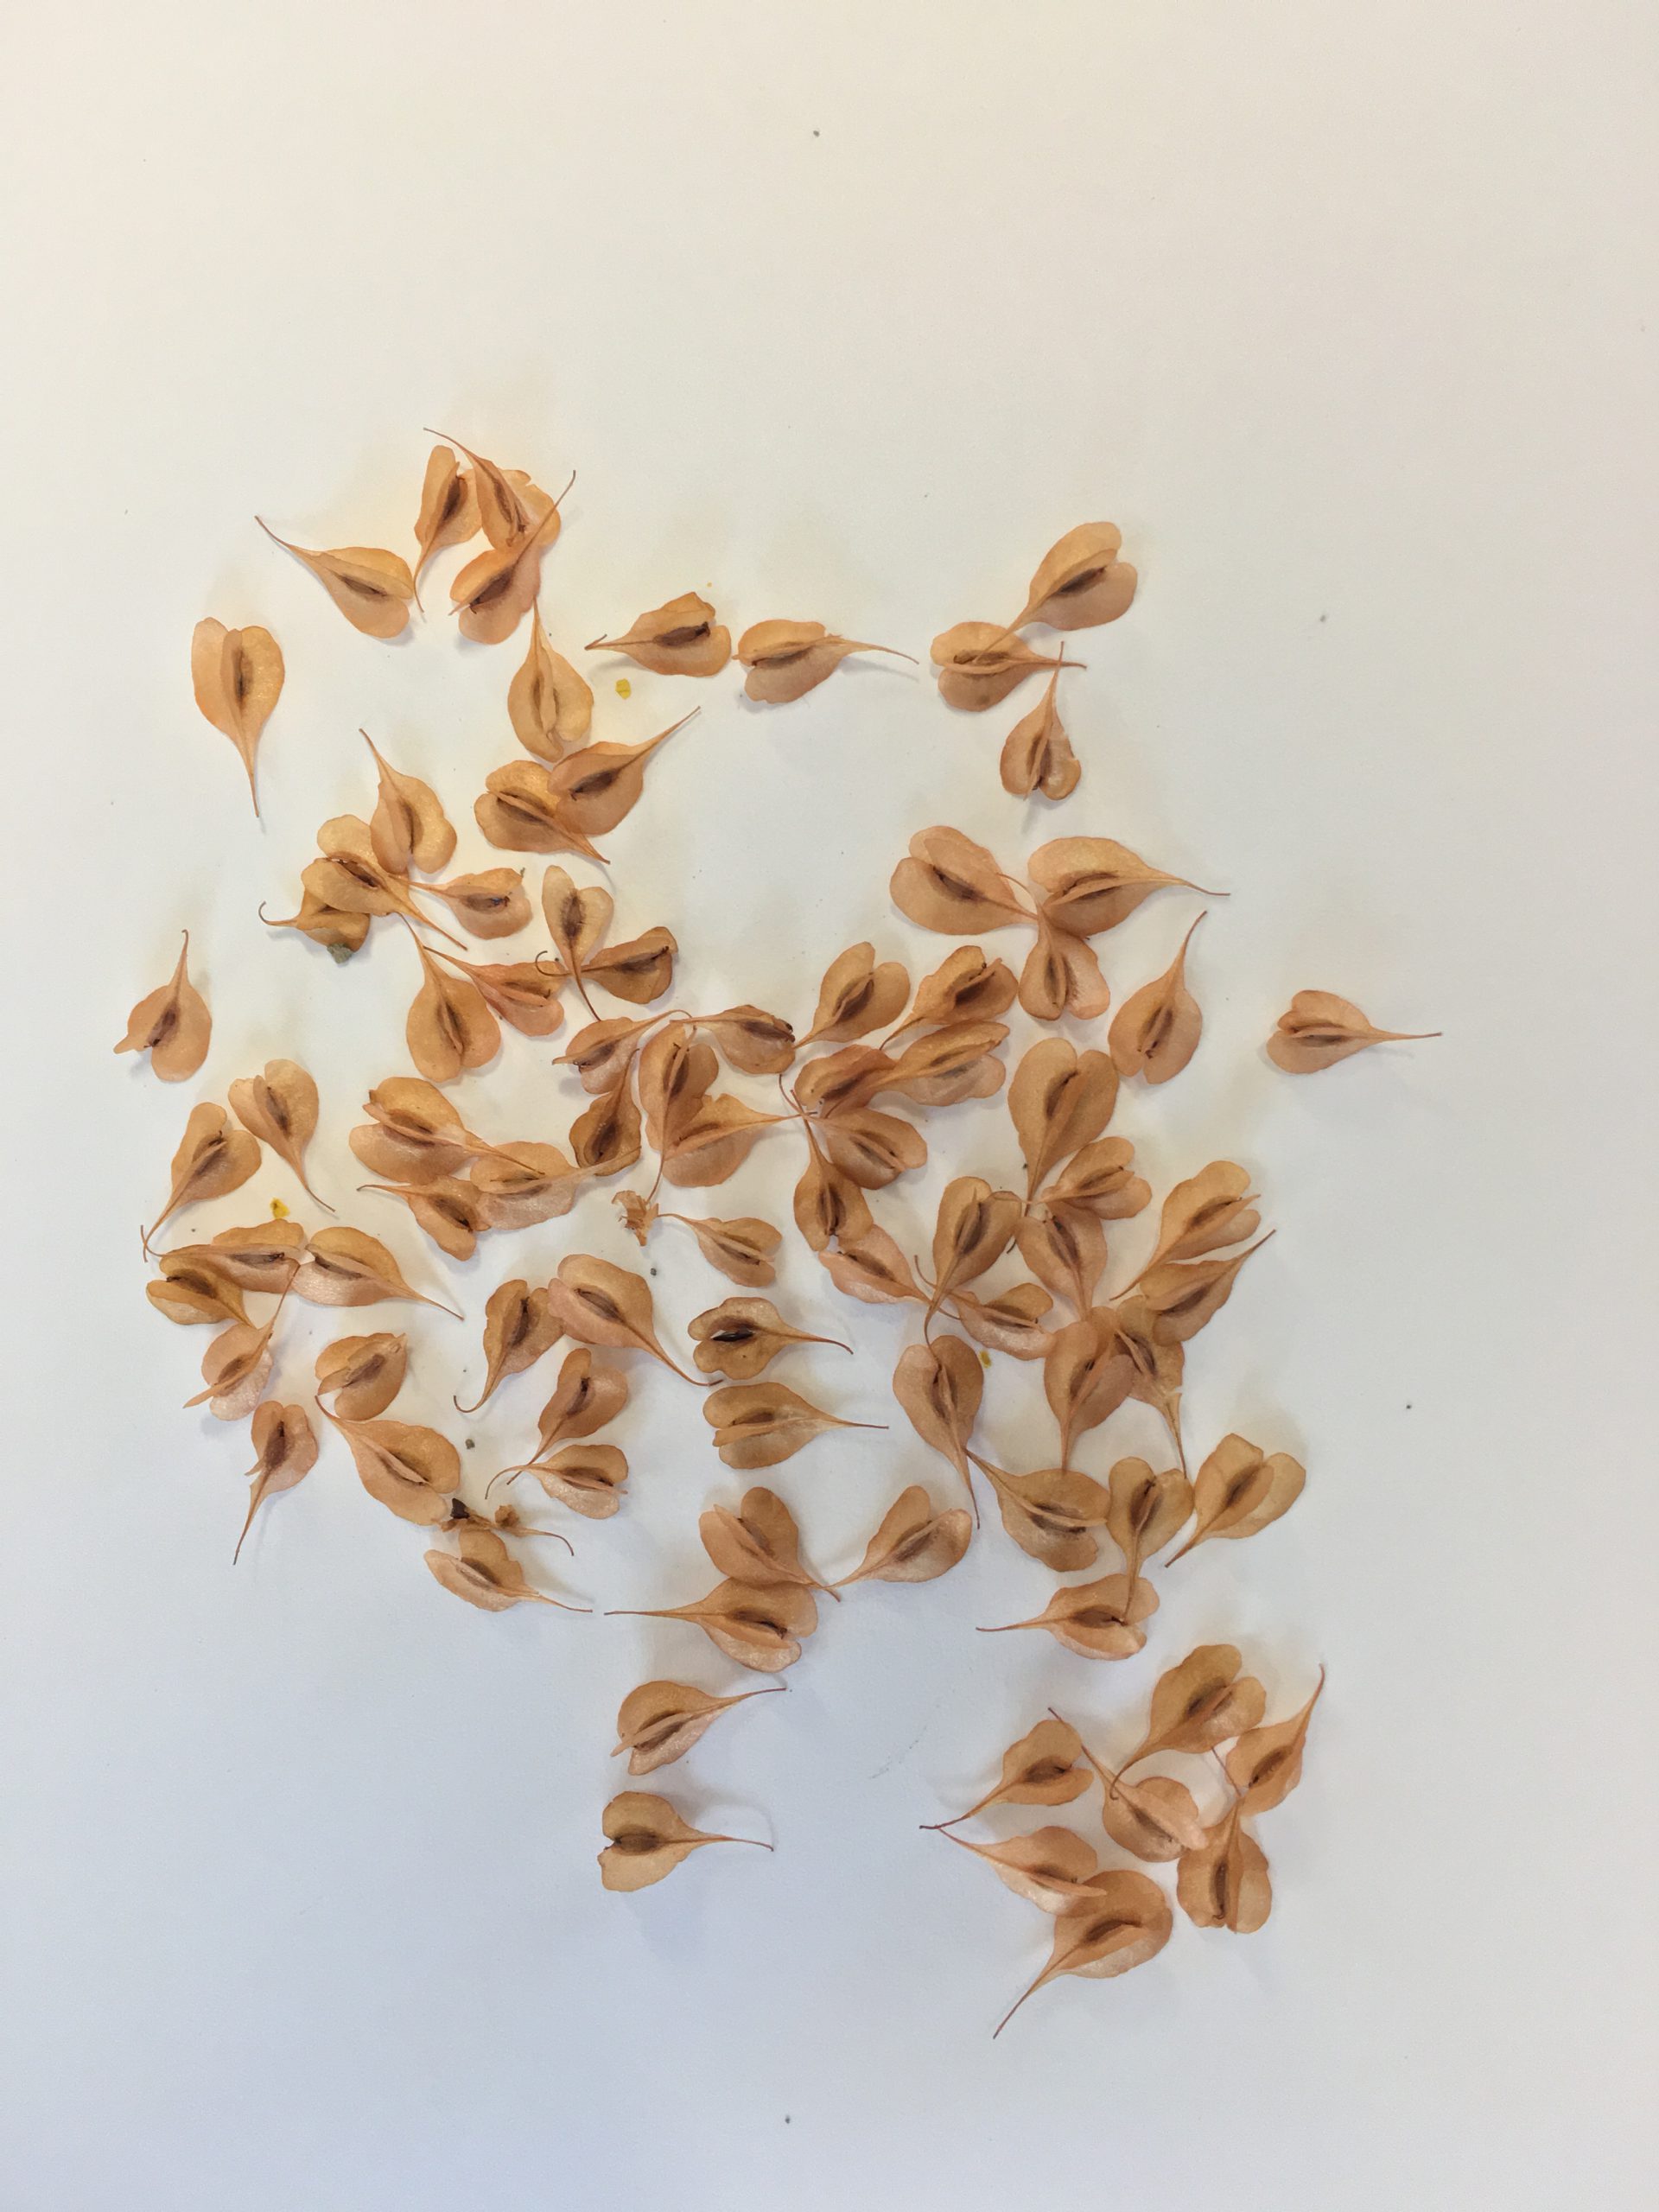 Japanese knotweed seeds